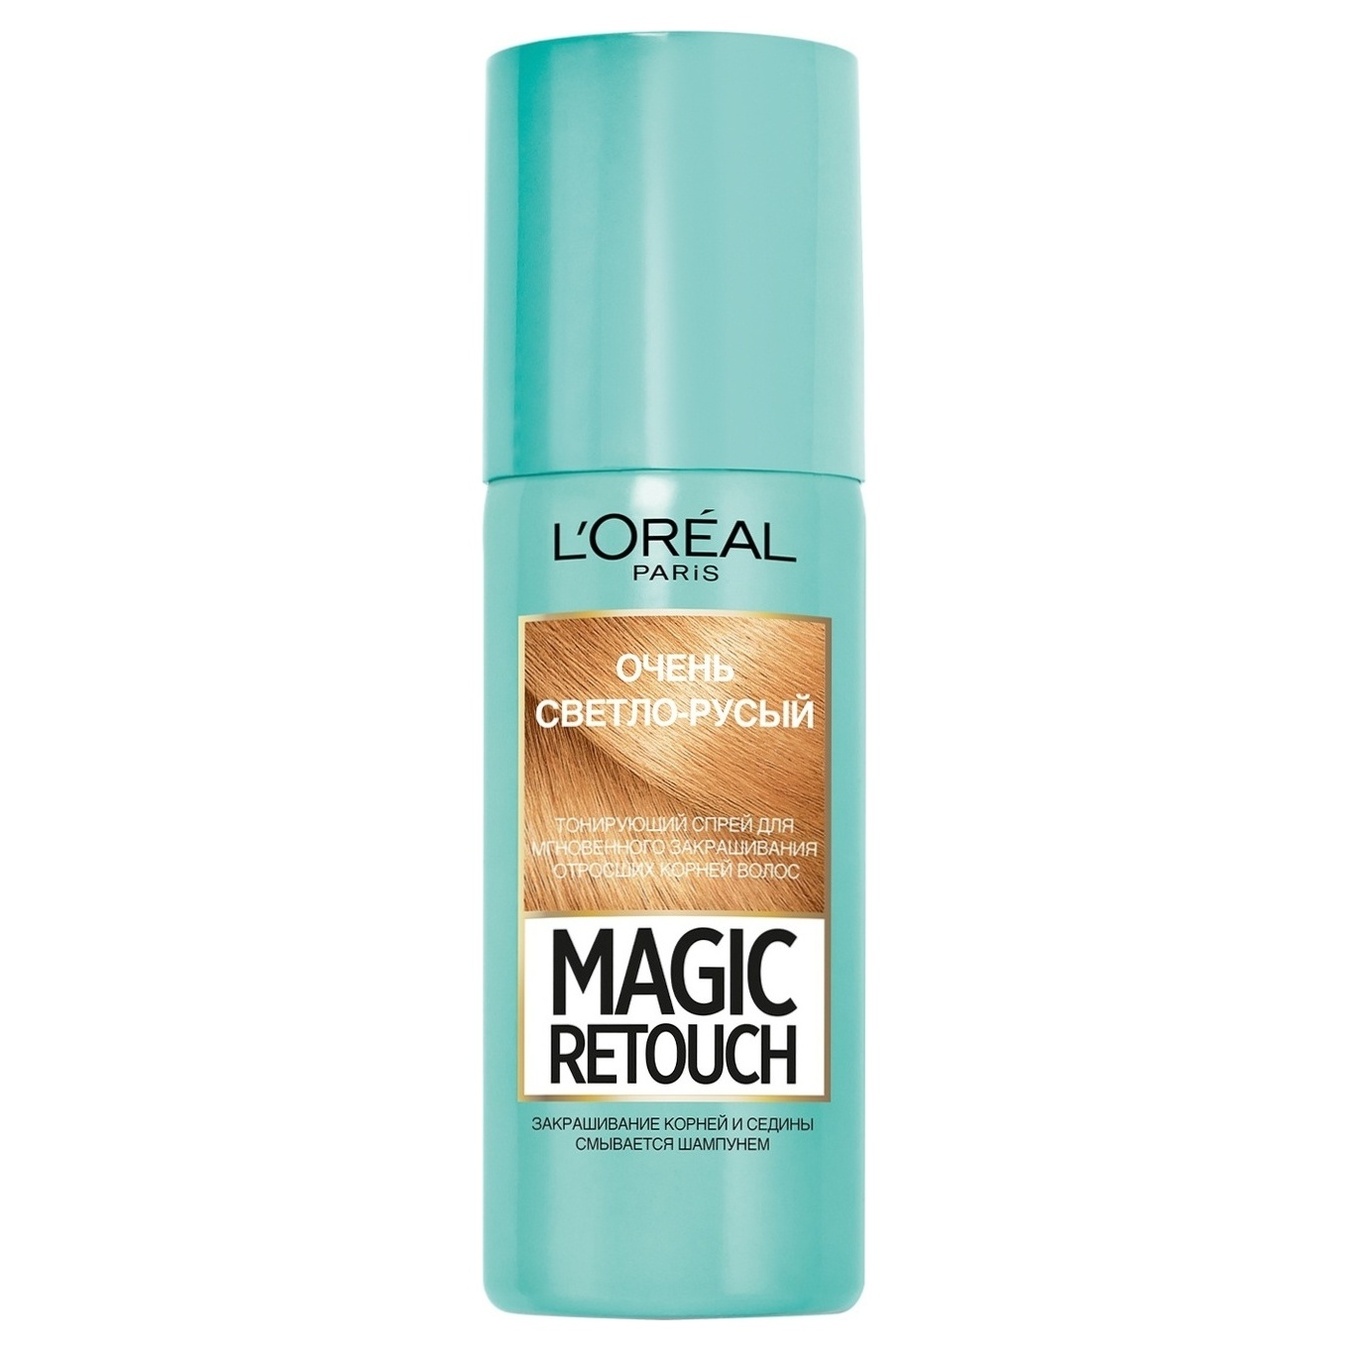 Спрей Magic retouch для мгновенного маскирования седых корней волос очень светло-русых 75 мл.